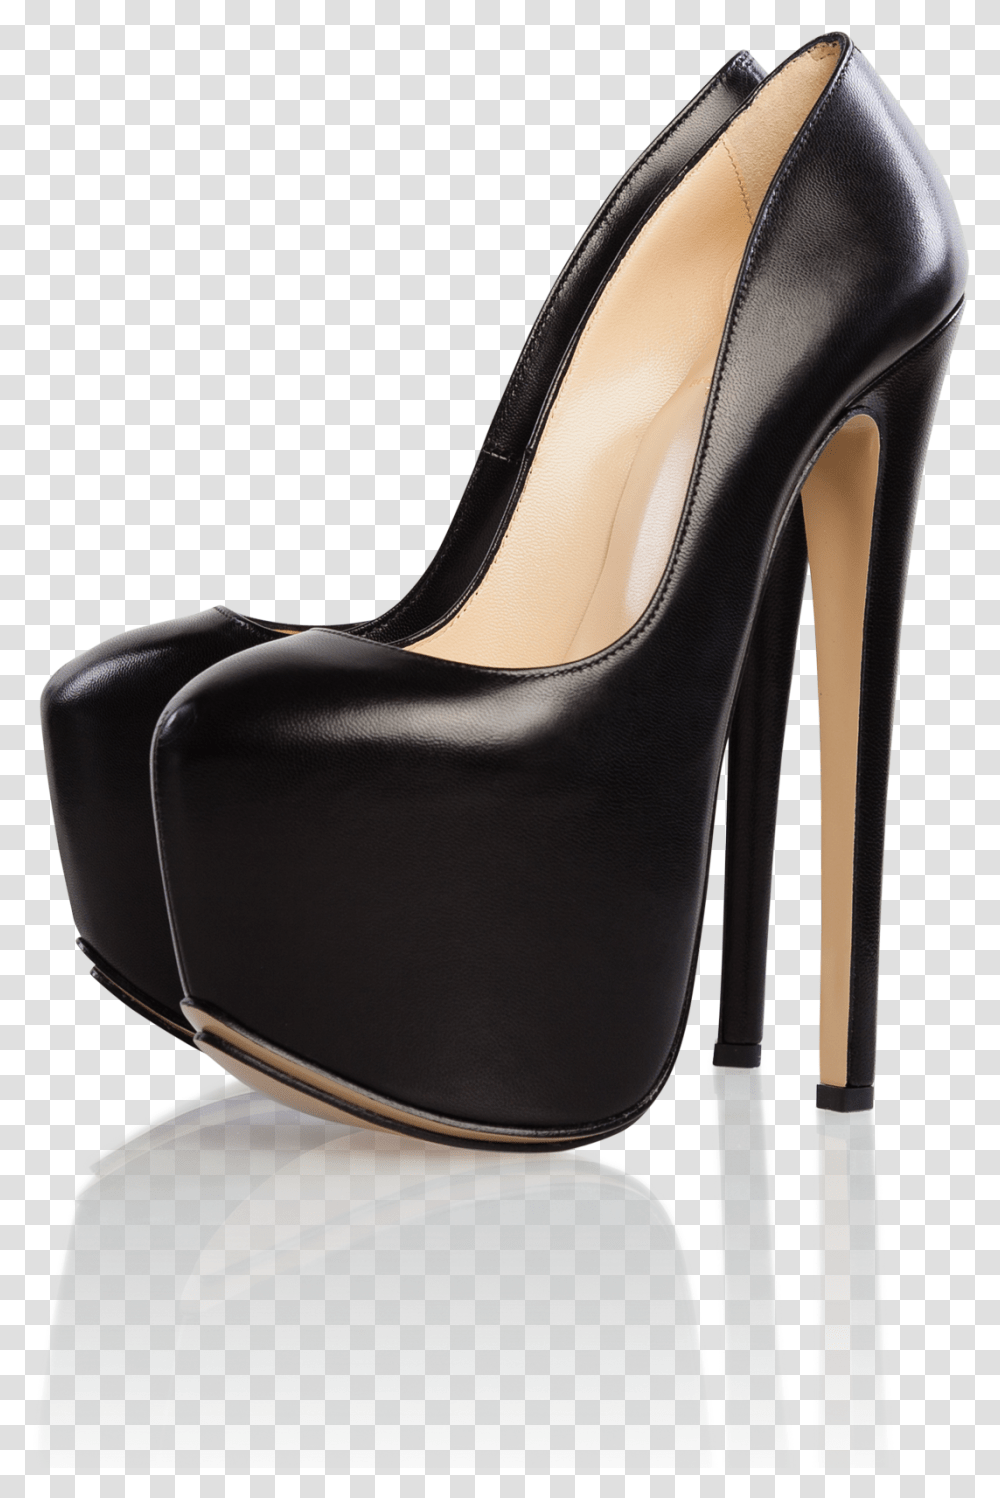 Frieda 180 Kid Black High Heels Shoes High Heels 180 Heels, Apparel, Footwear, Chair Transparent Png